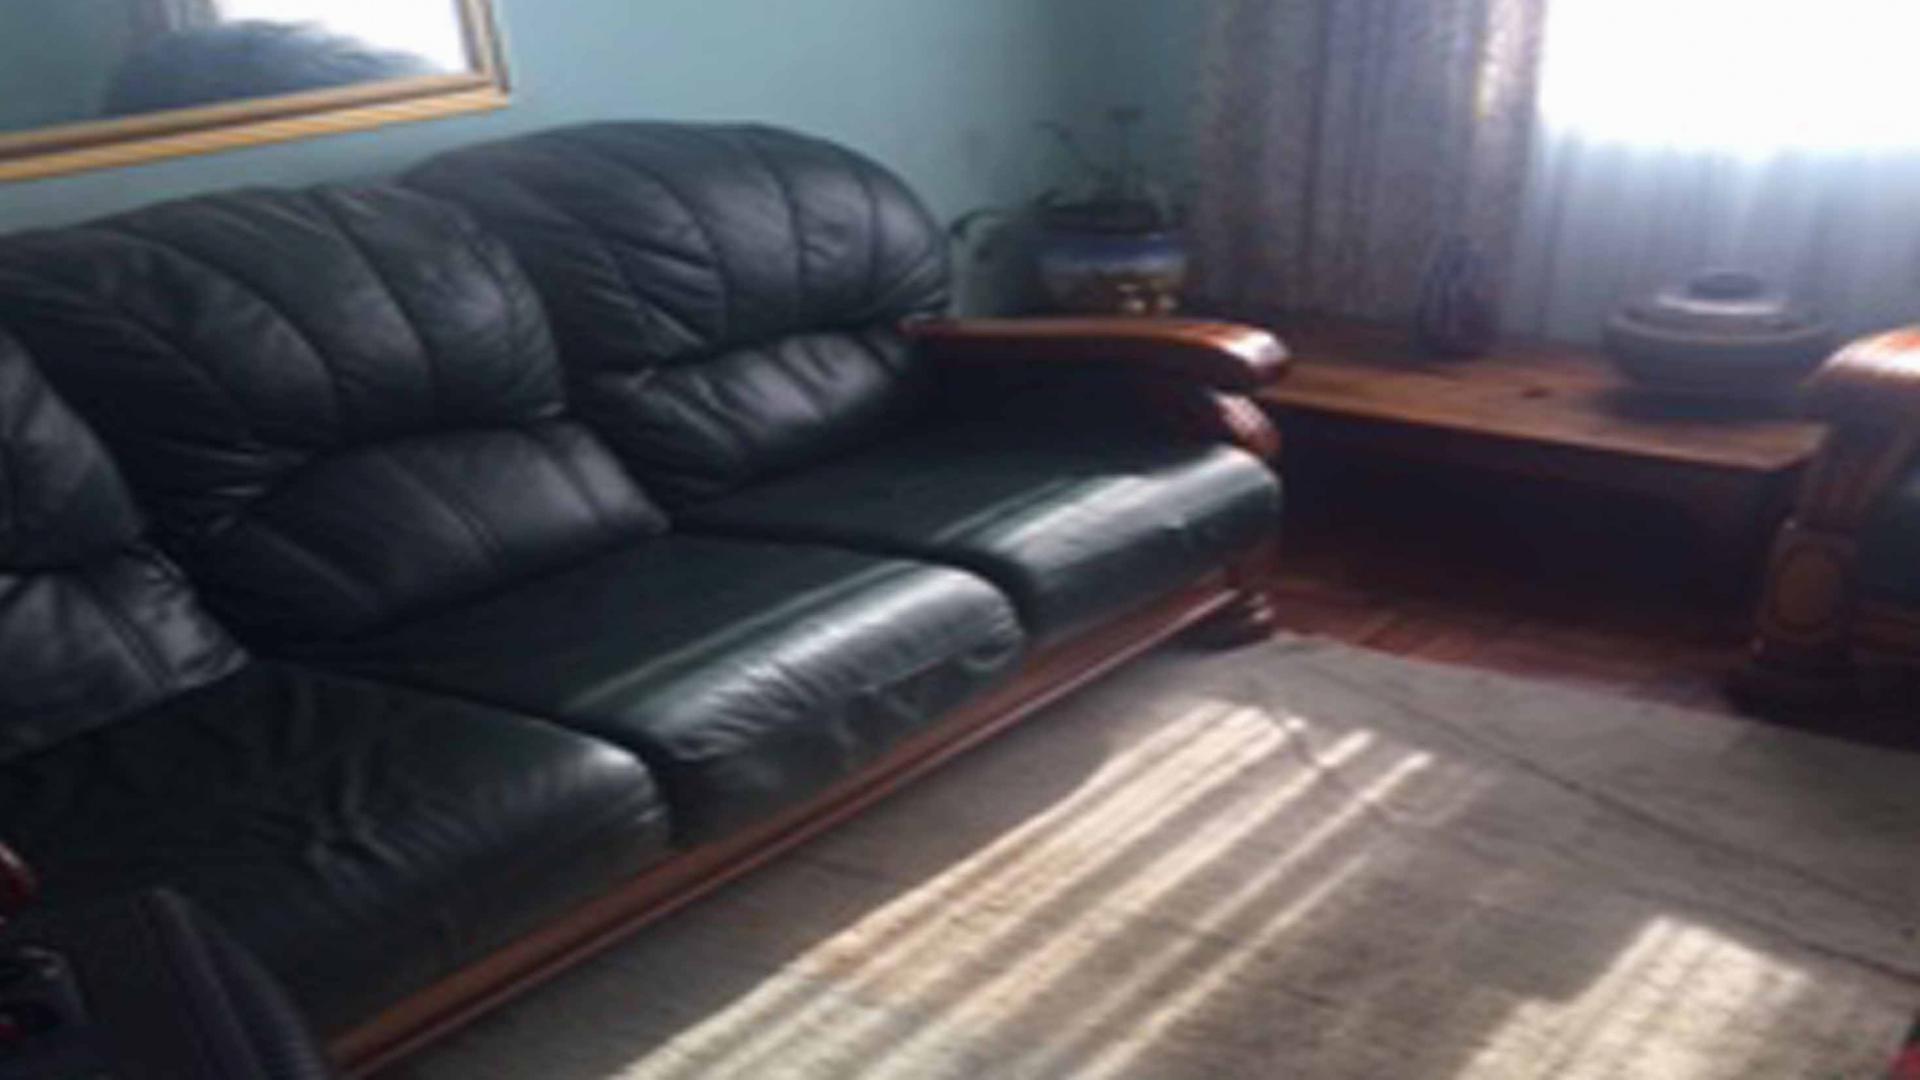 Lounges of property in Khayelitsha